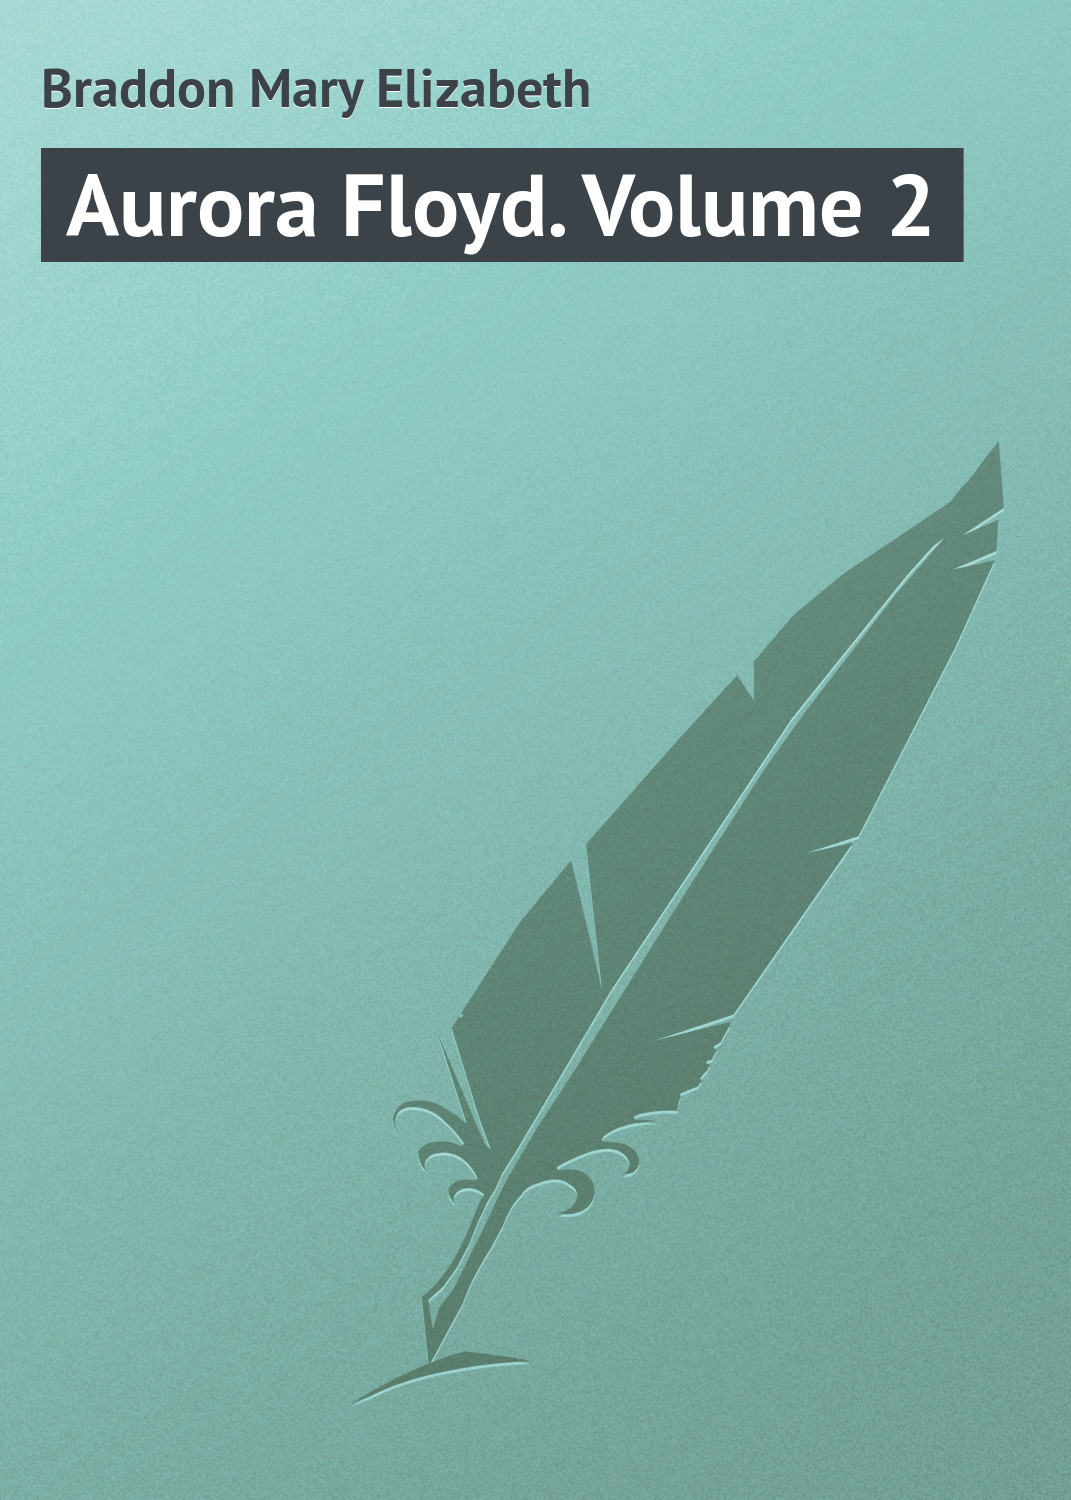 Книга Aurora Floyd. Volume 2 из серии , созданная Mary Braddon, может относится к жанру Иностранные языки, Зарубежная классика. Стоимость электронной книги Aurora Floyd. Volume 2 с идентификатором 23162523 составляет 5.99 руб.